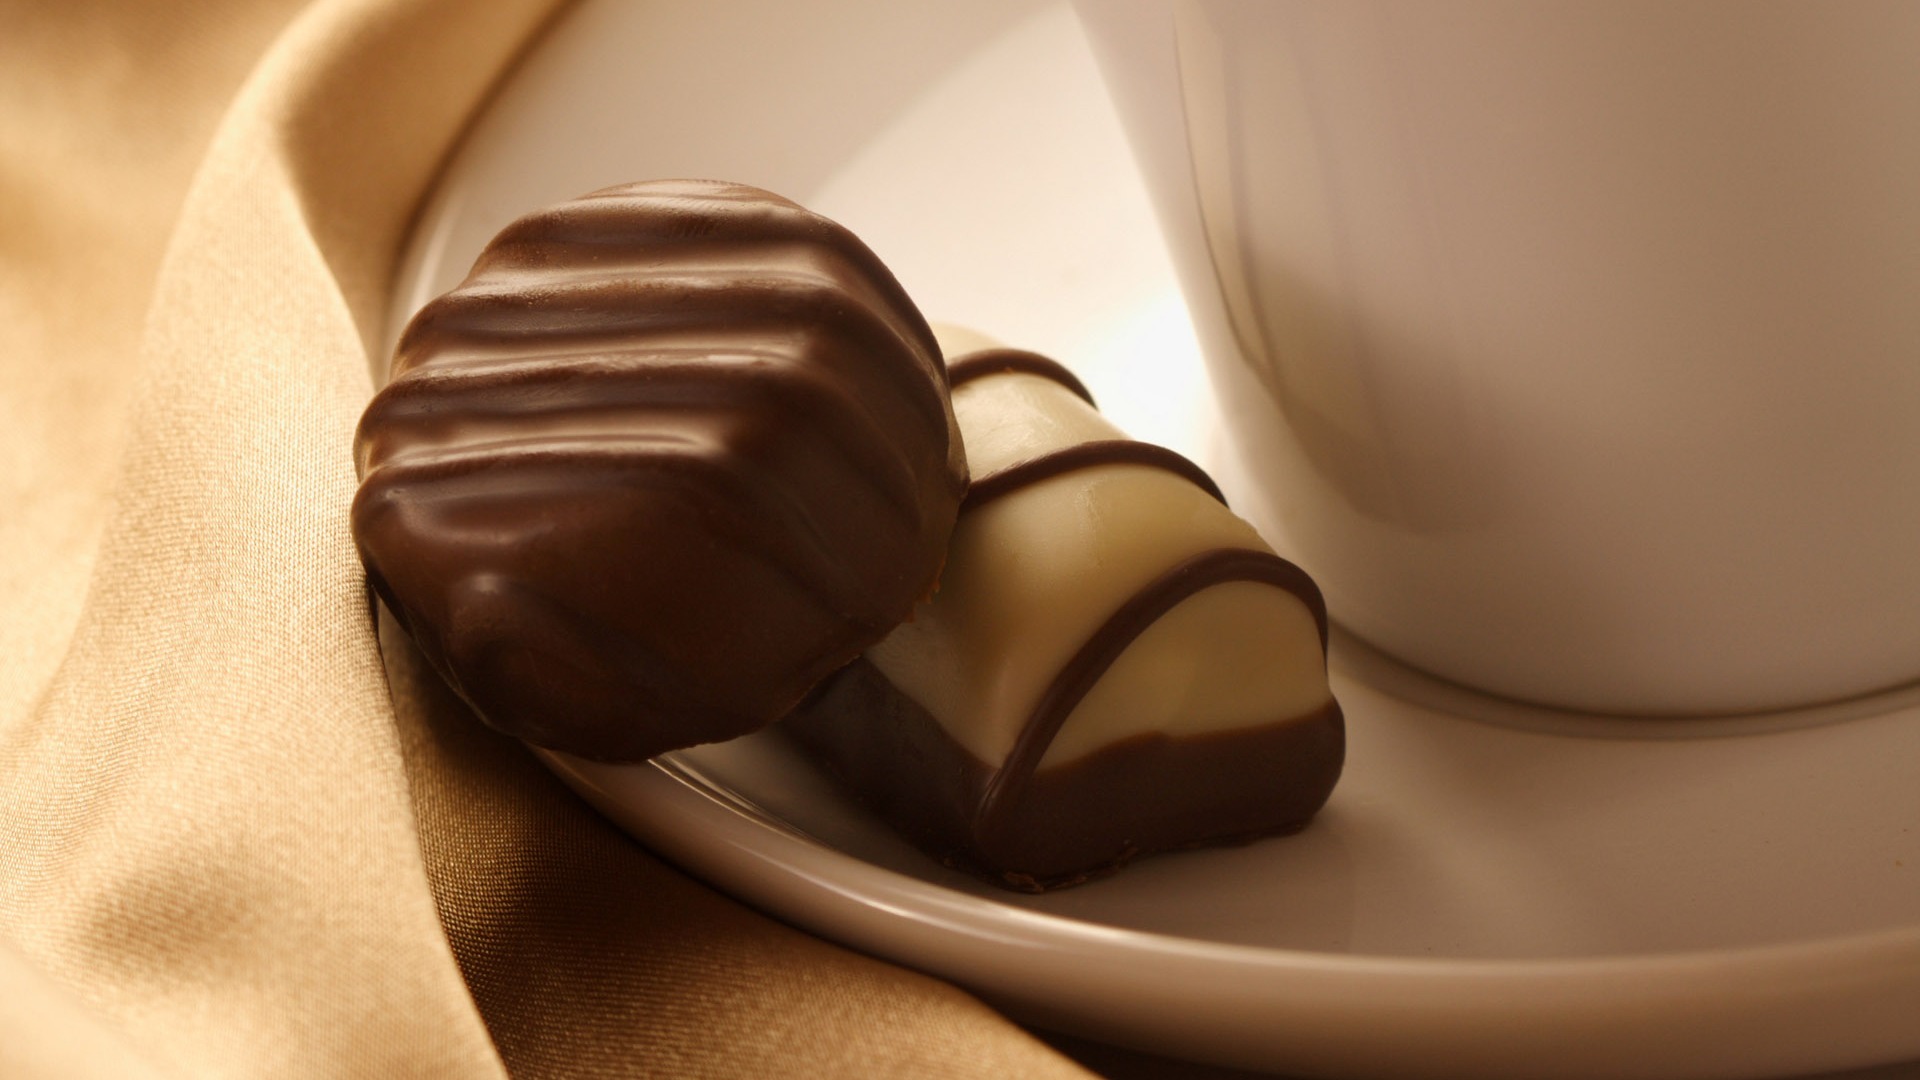 Chocolate plano de fondo (2) #16 - 1920x1080